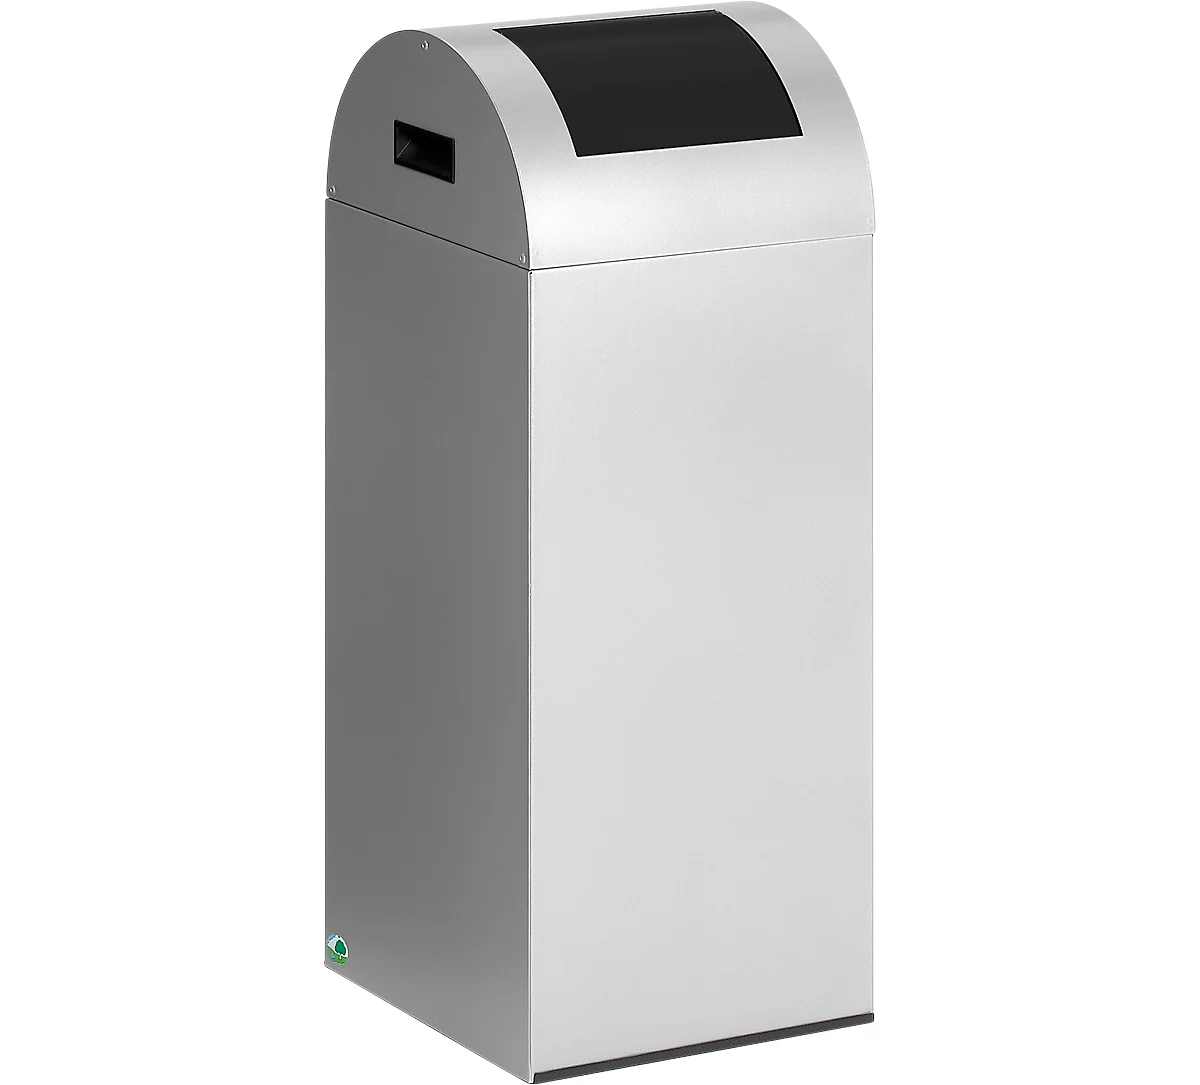 Zelfblussende afvalverzamelaar voor recycleerbaar afval 55R, zilver/antraciet